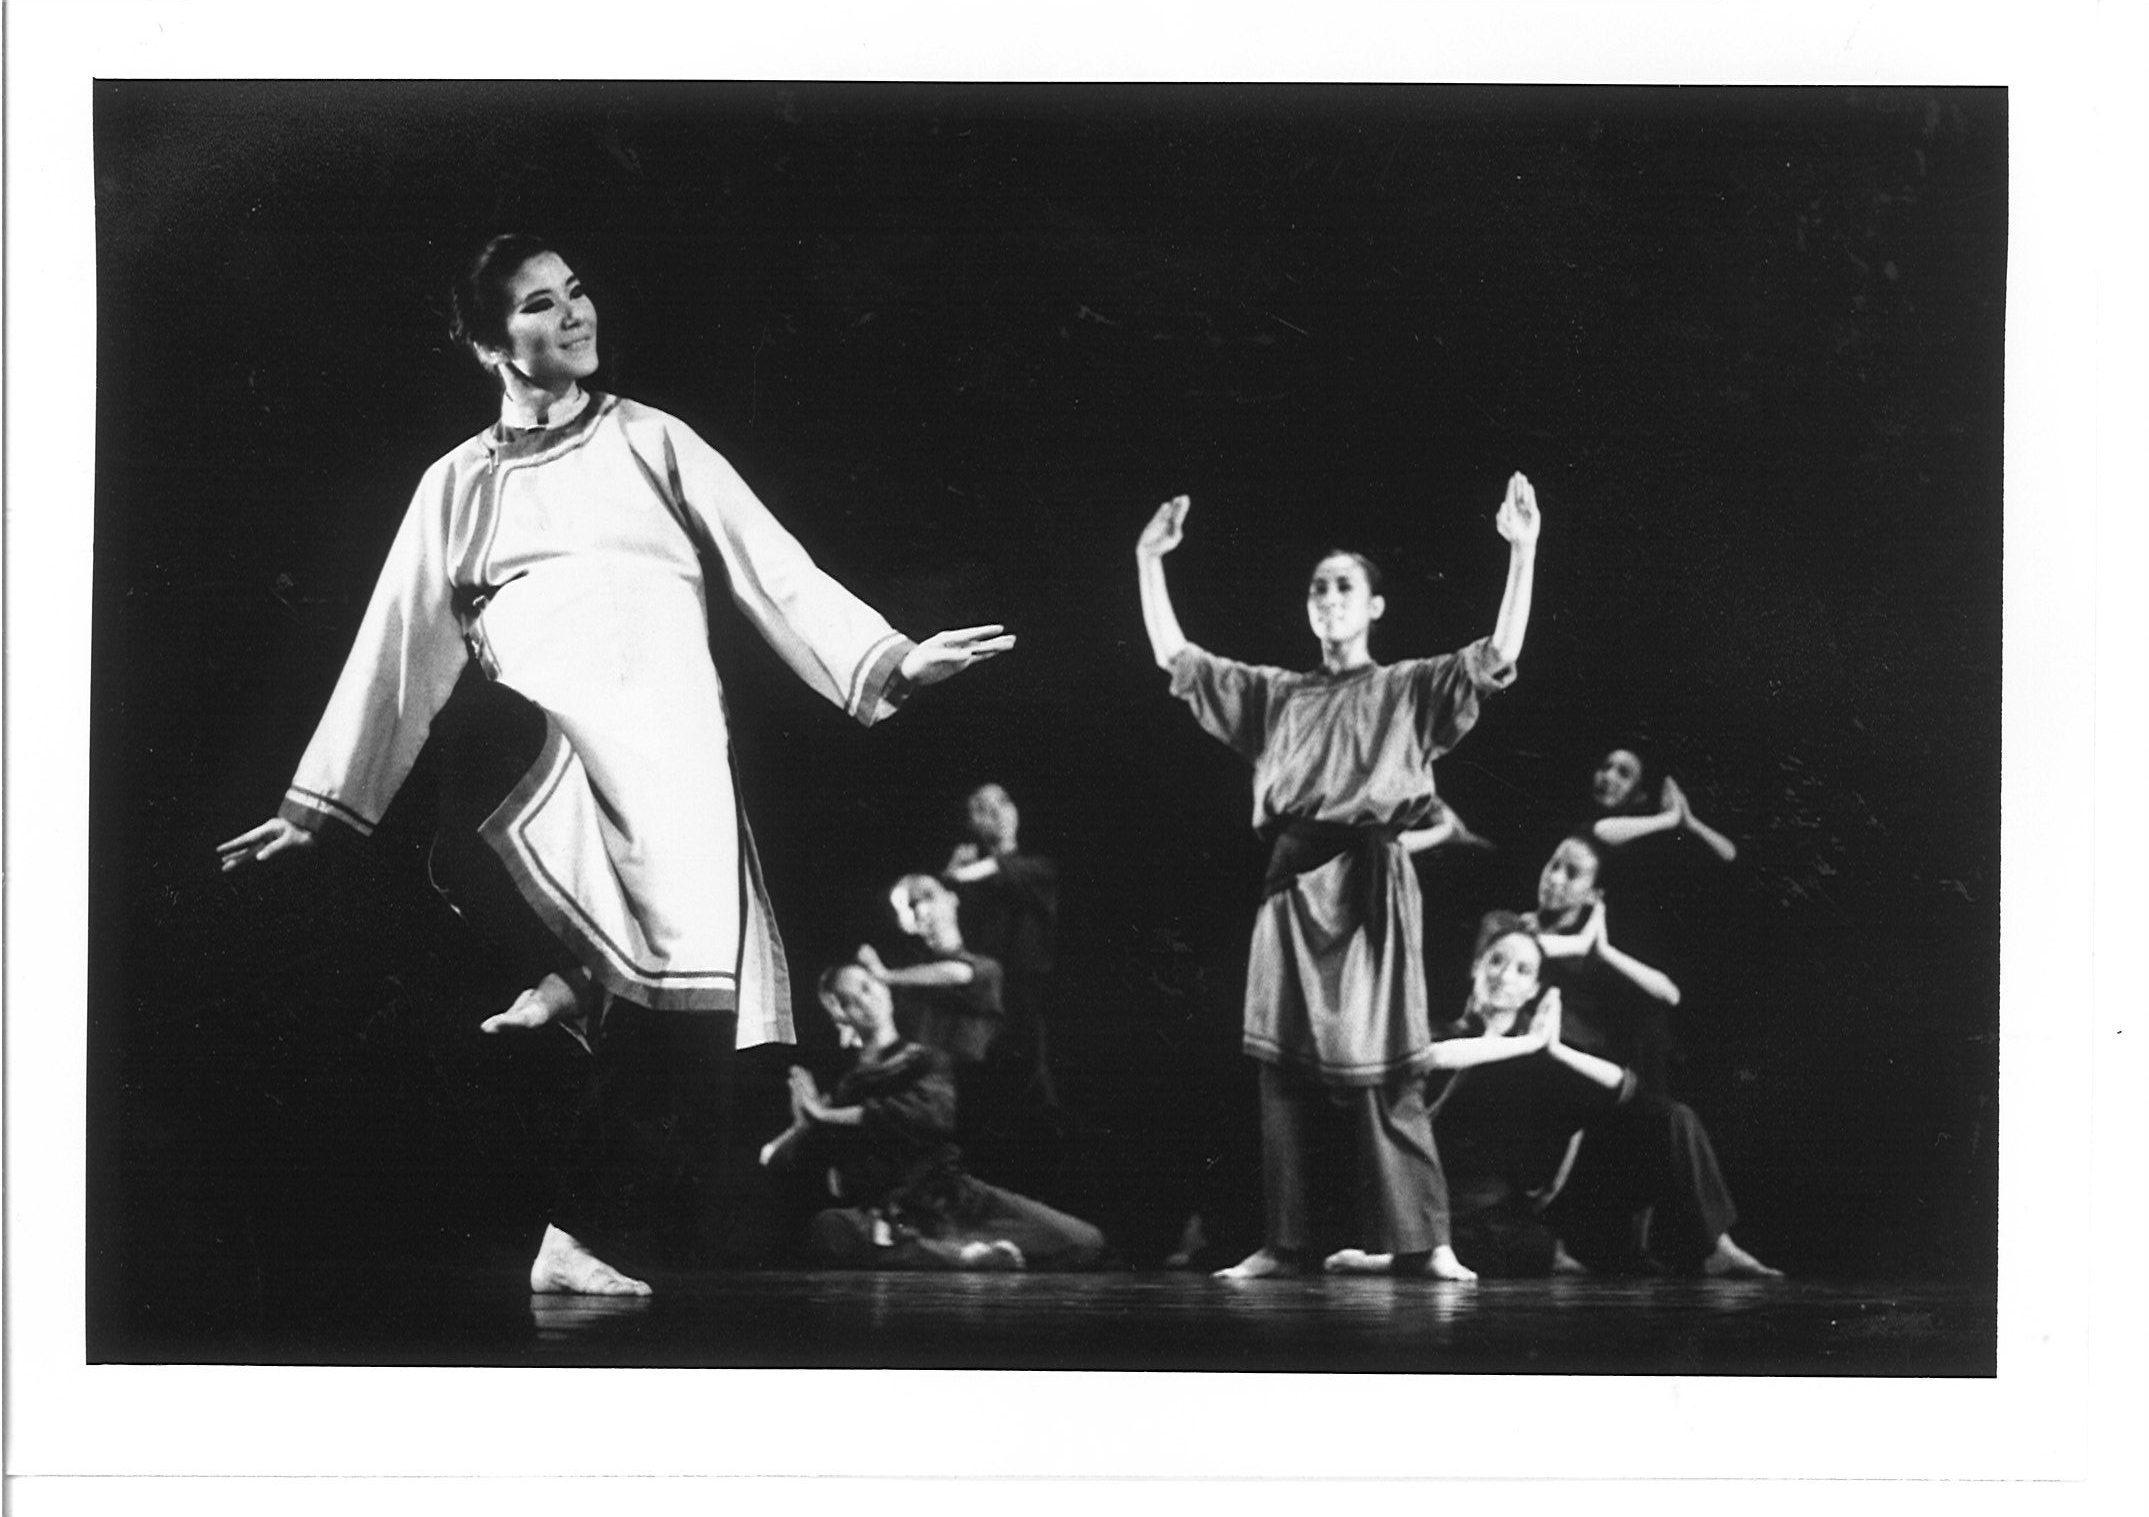 1986 國際舞蹈學院舞蹈節